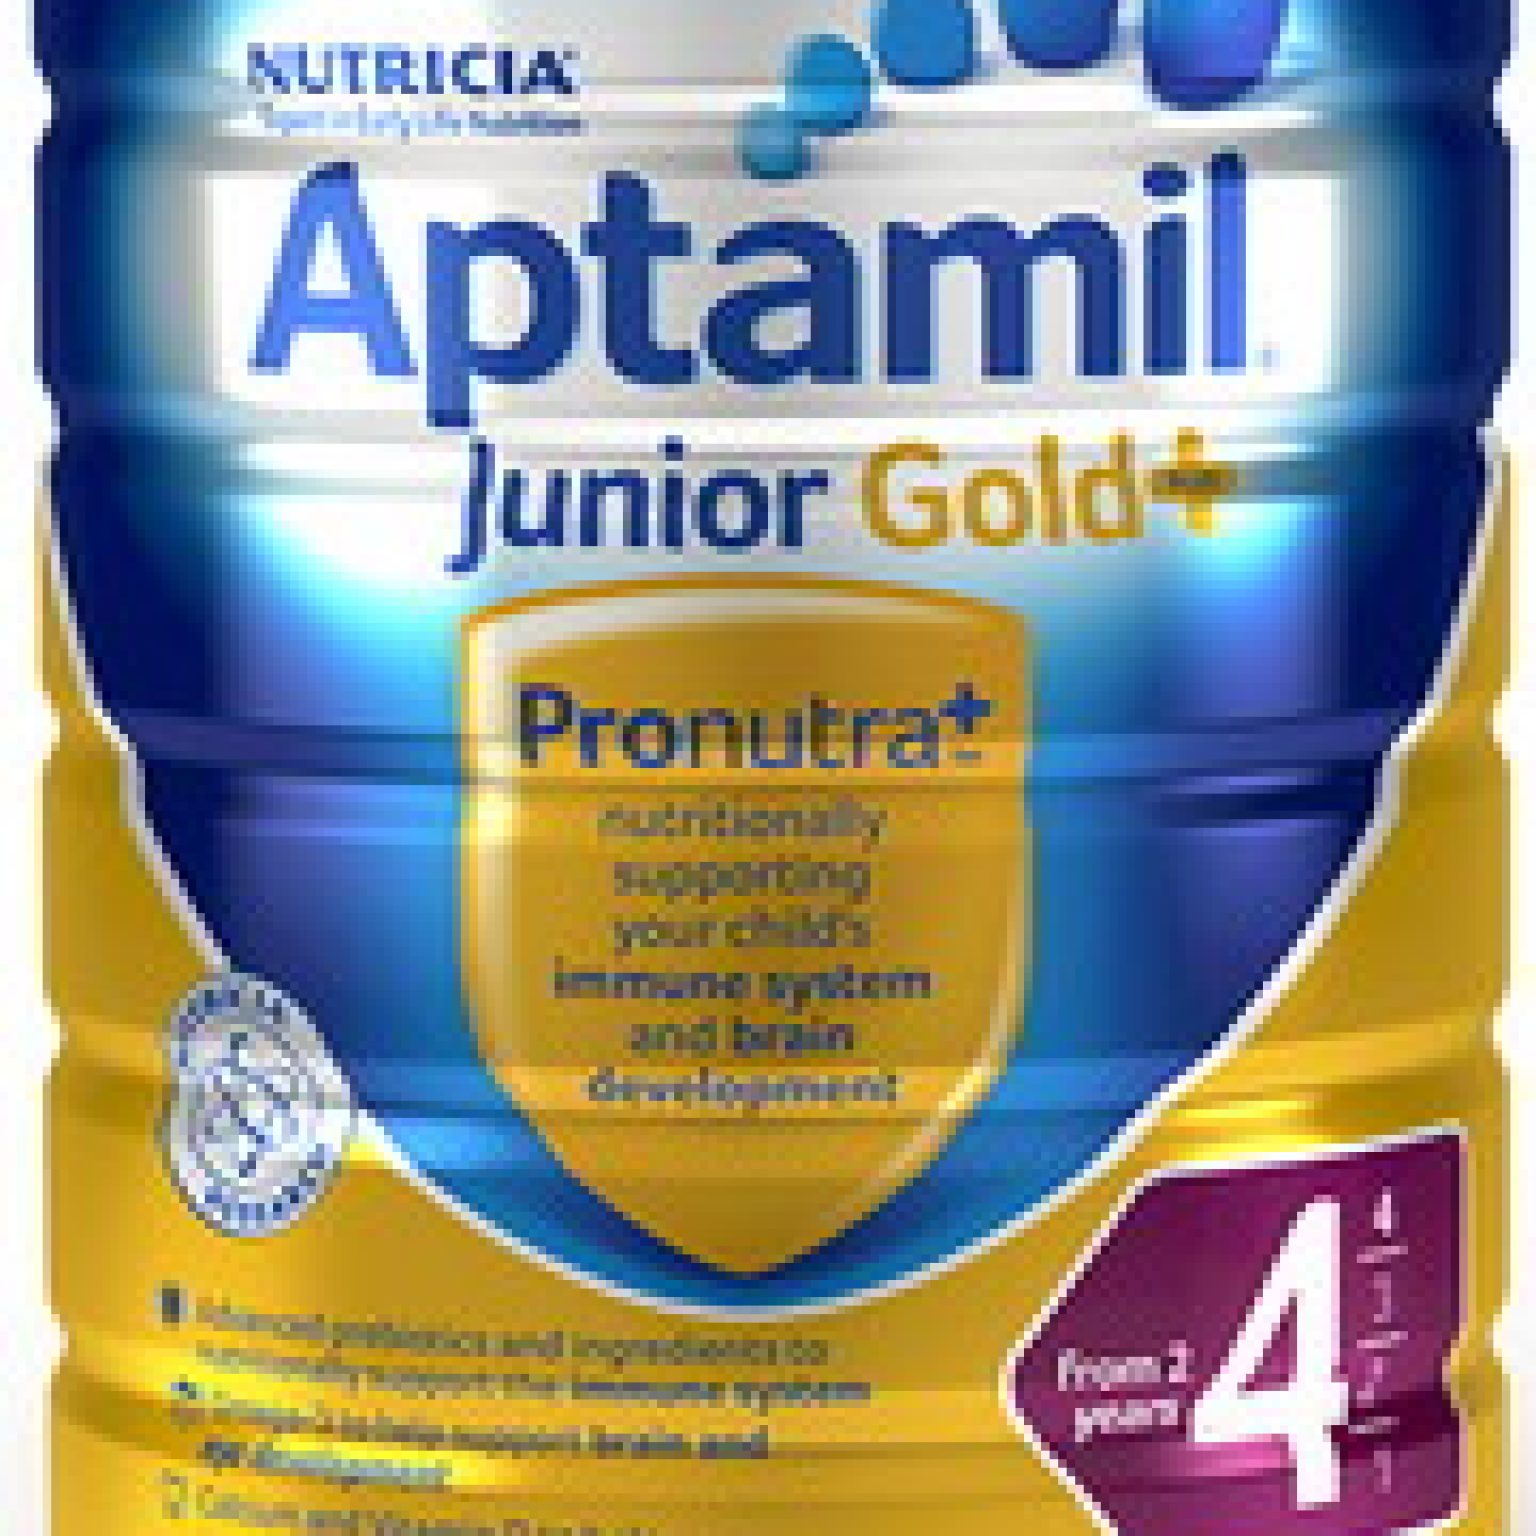 Sữa Aptamil Gold Úc số 4